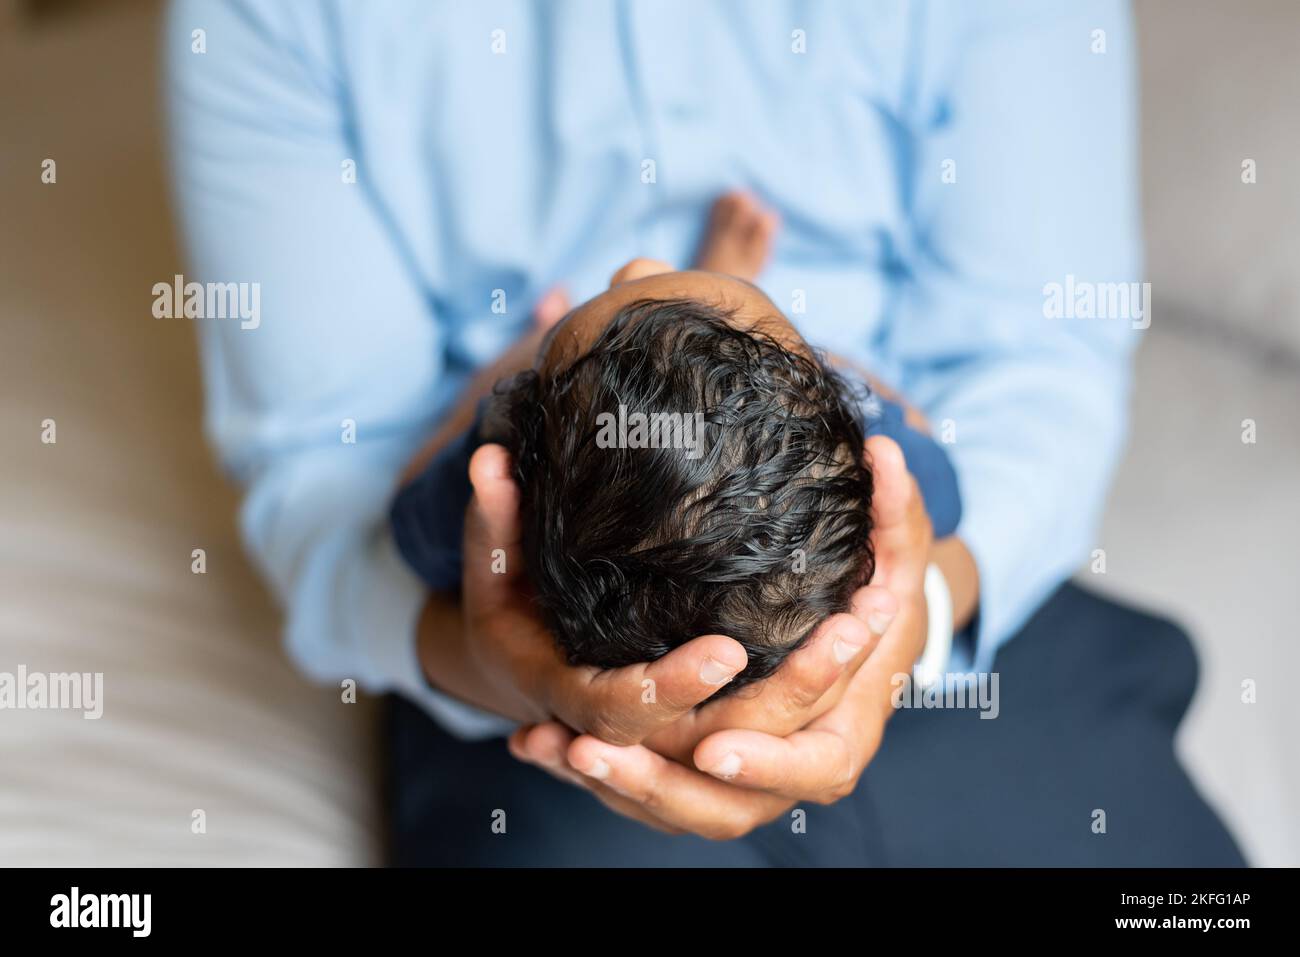 Ein Vater, der sein neugeborenes Baby in den Händen hält, mit einer Nahaufnahme von Kopf und Haar des Babys Stockfoto